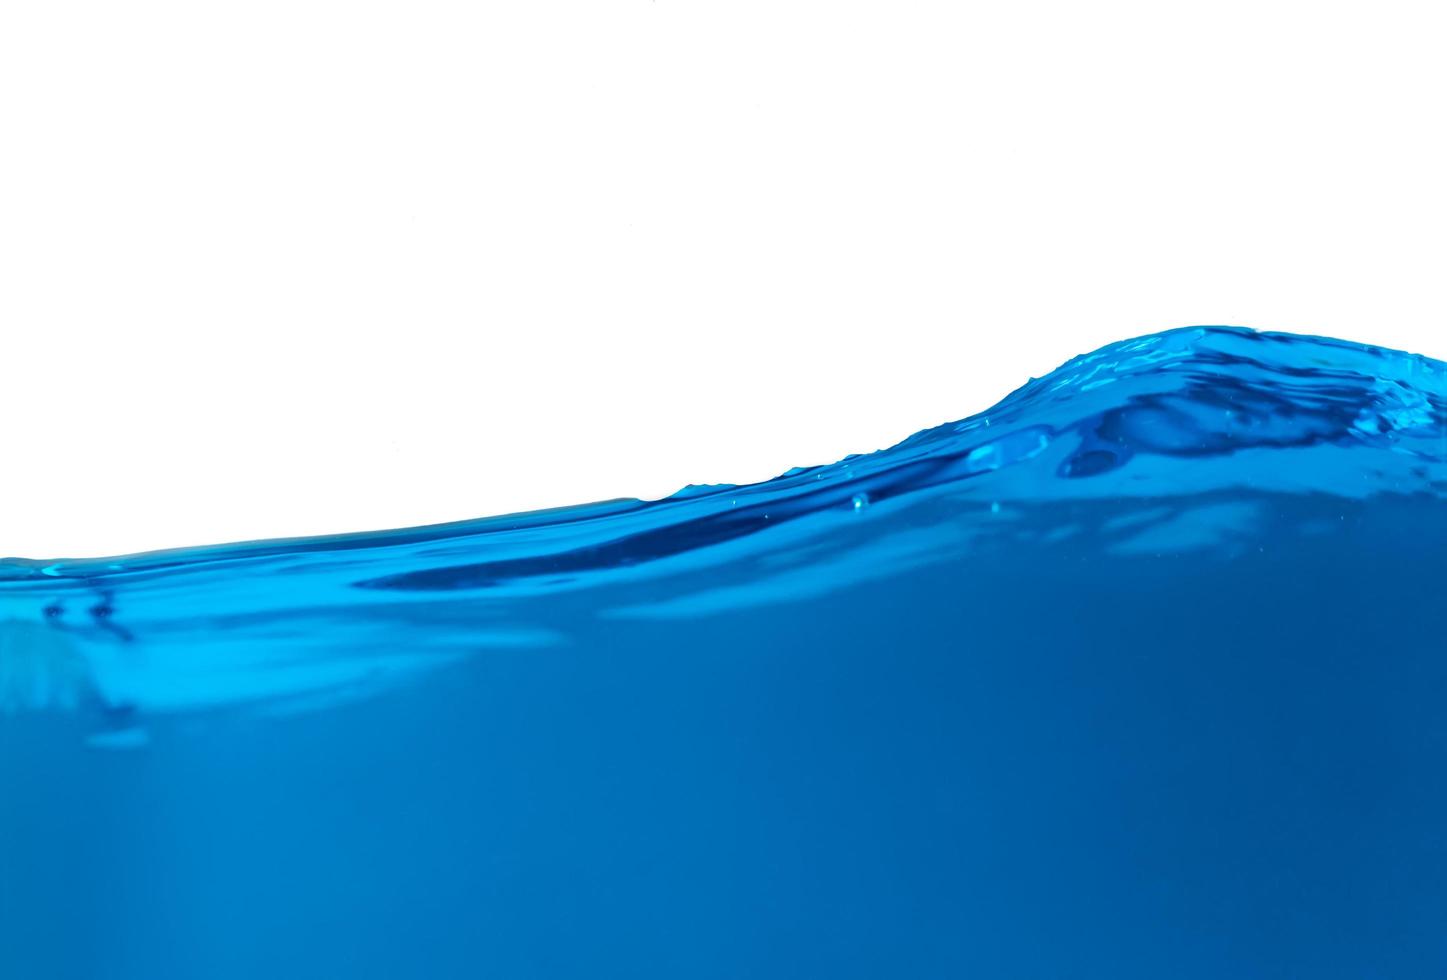 surface des éclaboussures d'eau bleue isolées sur fond blanc. photo